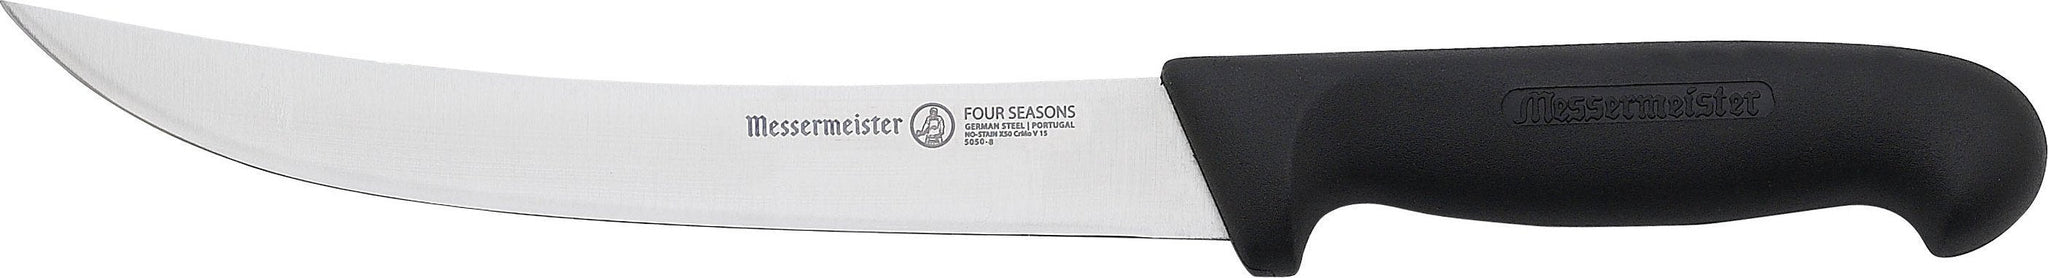 Messermeister - Four Seasons 8" Breaking Knife - 5050-8